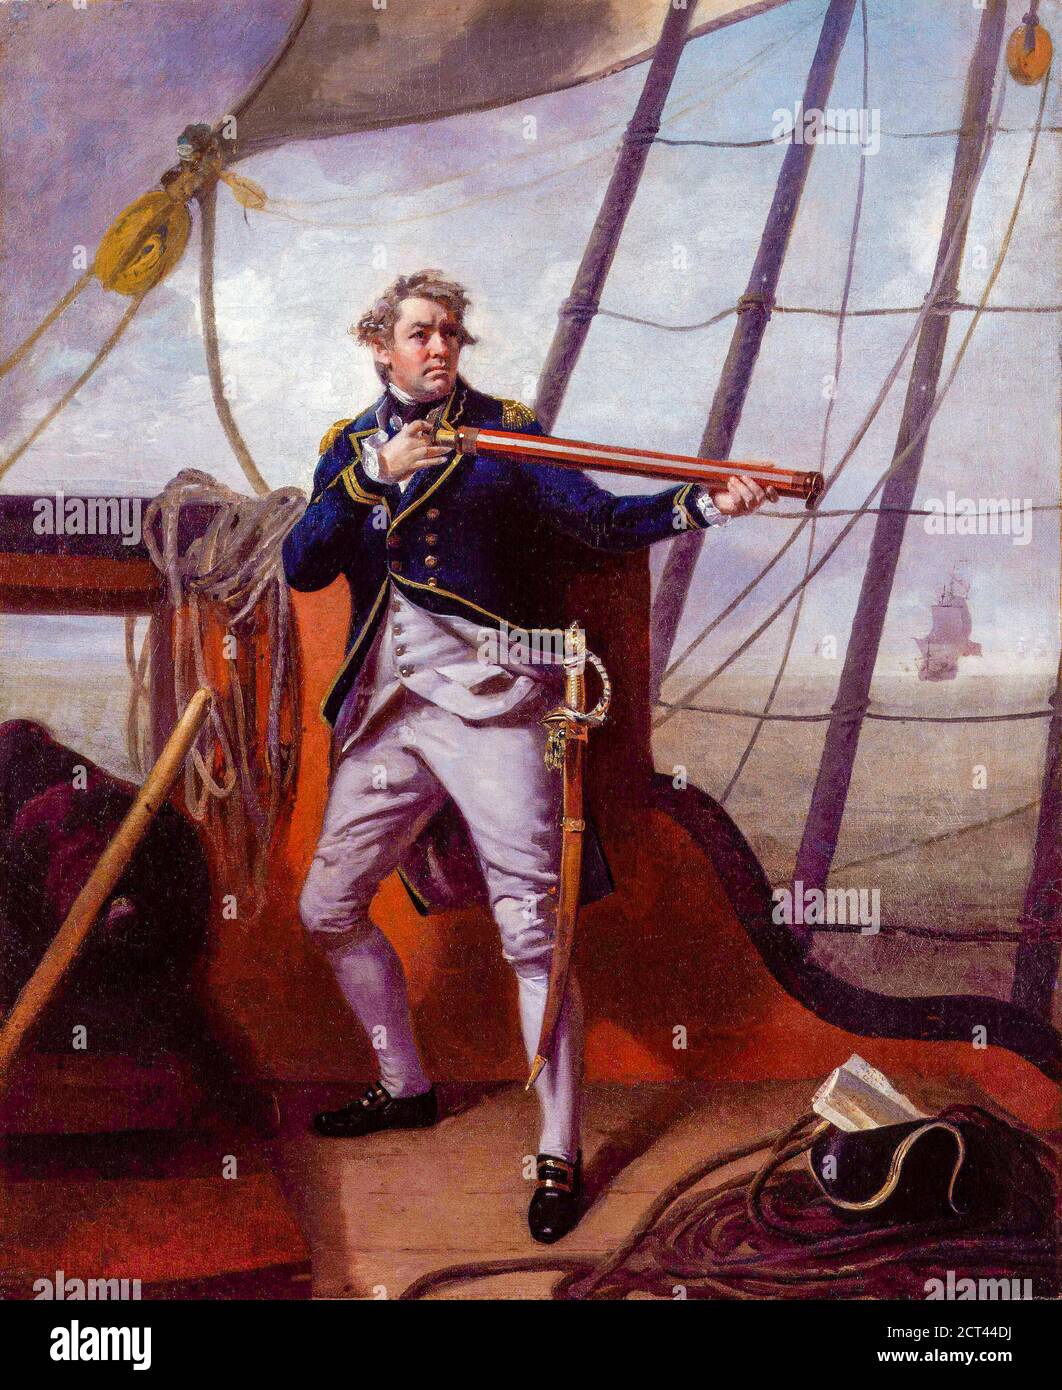 El almirante Adam Duncan, primer vizconde Duncan (1 de julio de 1731 – 4 de agosto de 1804) fue un almirante británico que derrotó a la flota holandesa frente a Camperdown (al norte de Haarlem) el 11 de octubre de 1797. Esta victoria es considerada una de las acciones más significativas en la historia naval. Por Henri-Pierre Danloux (24 de febrero de 1753 – 3 de enero de 1809) fue un pintor y dibujante francés. Foto de stock